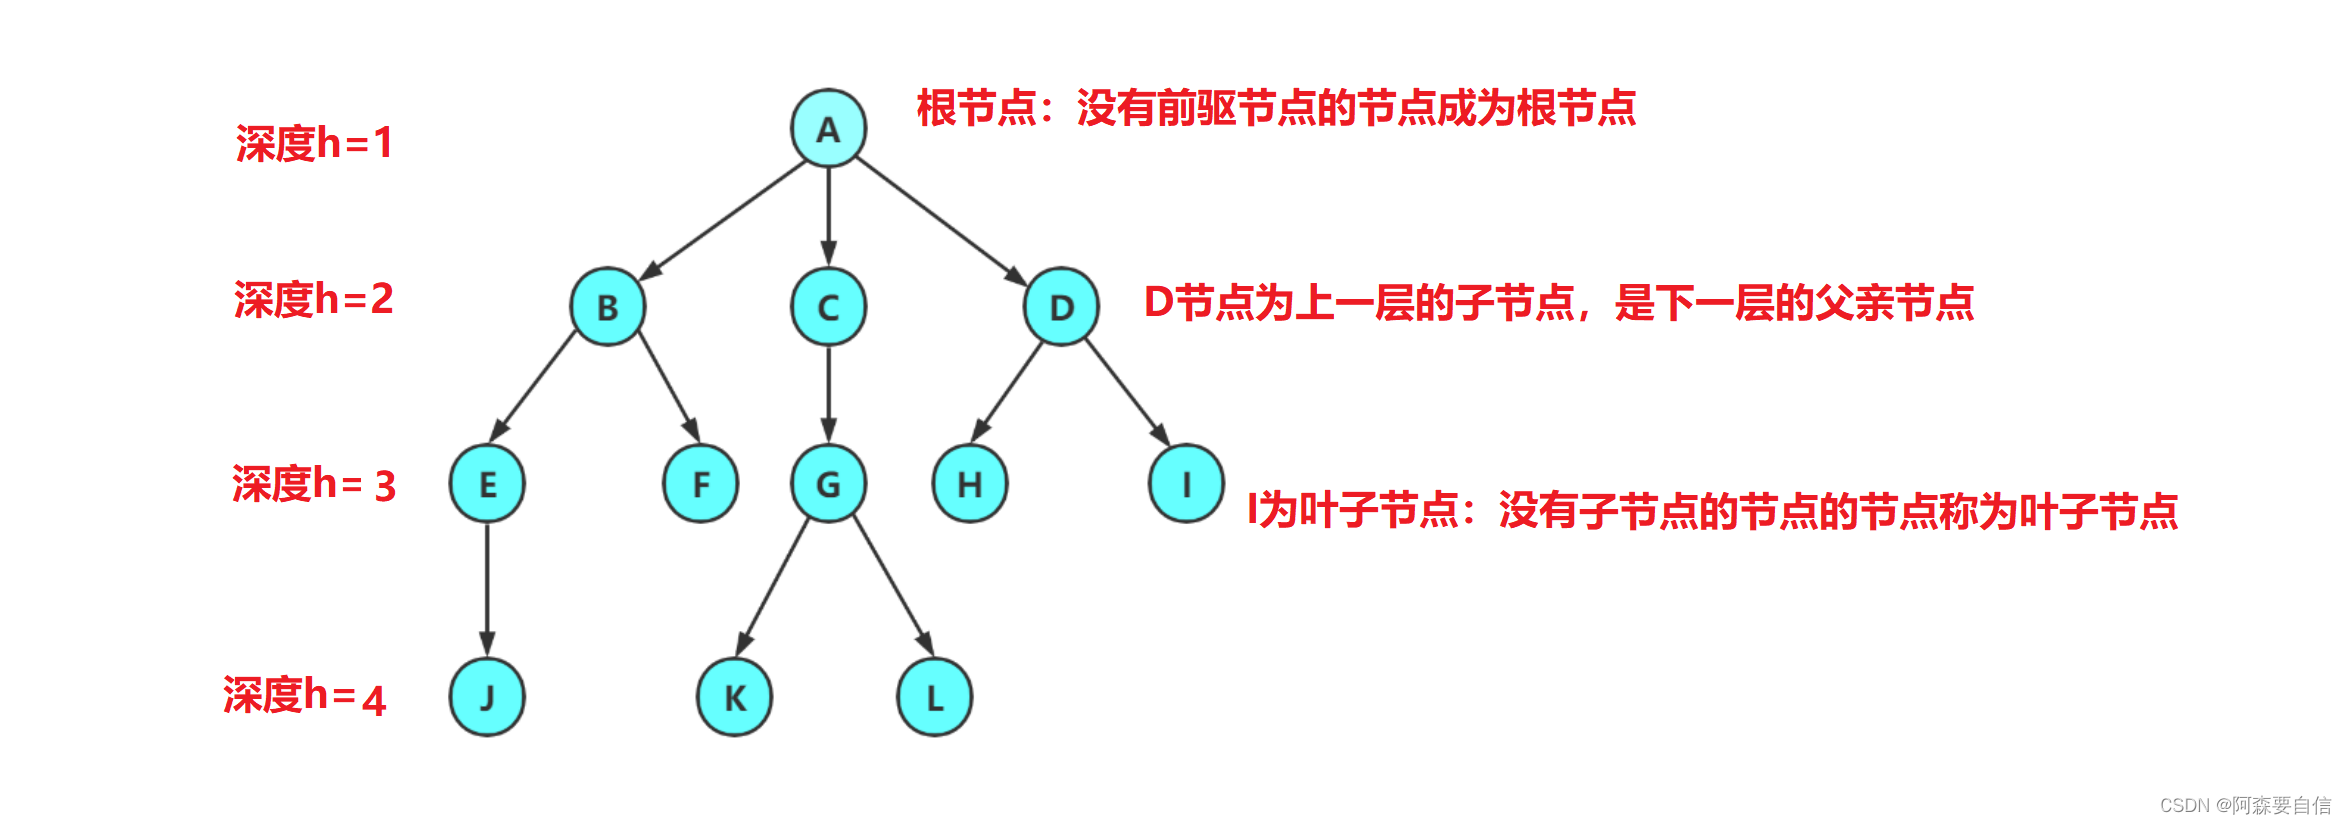 【算法与数据结构】深入解析二叉树（一）